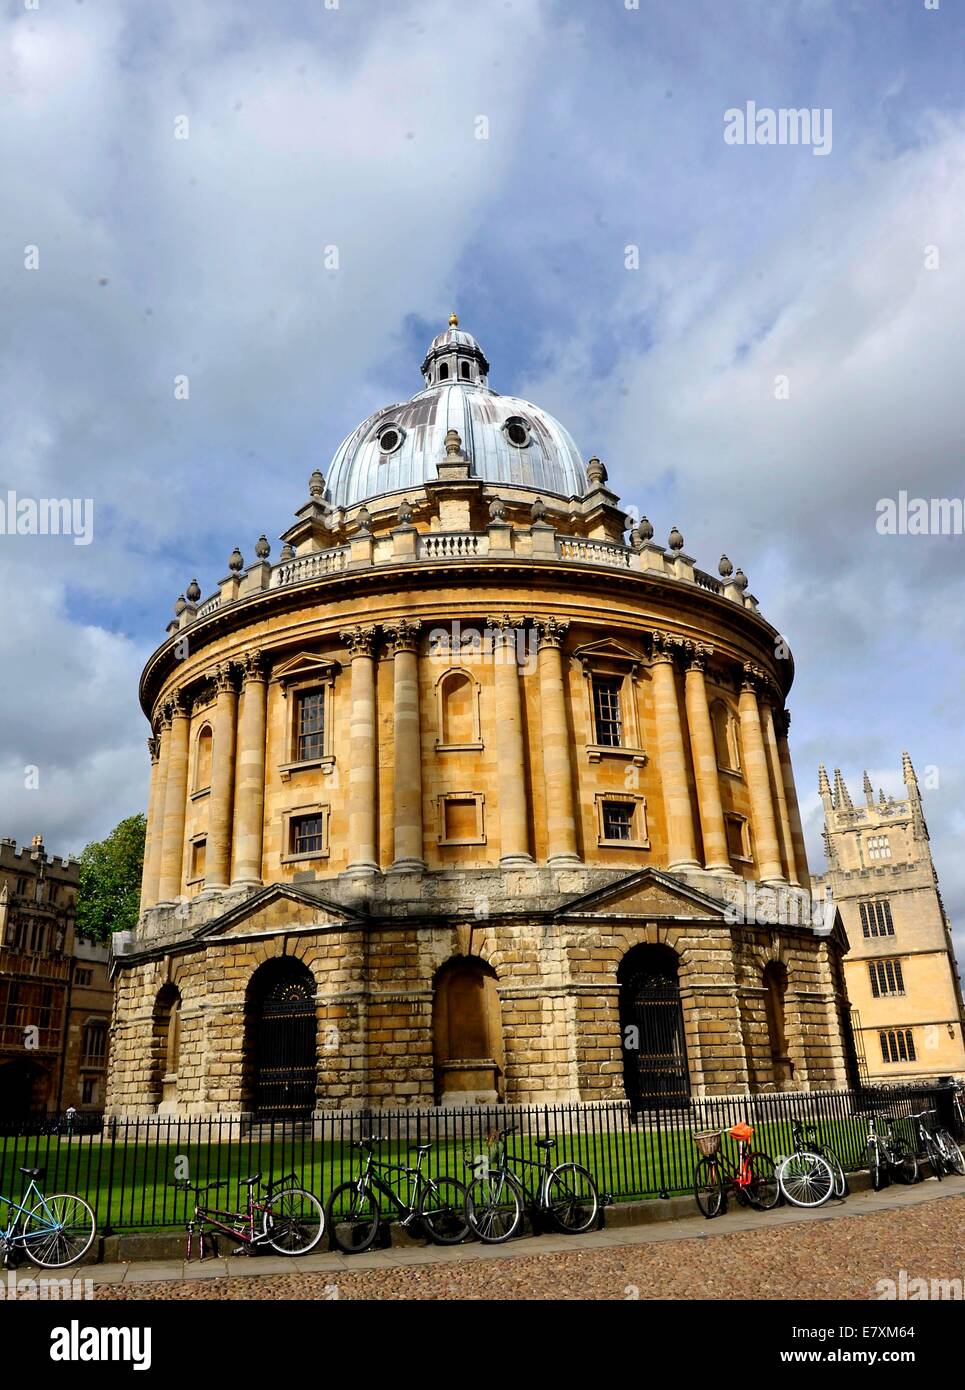 La Radcliffe Camera est un bâtiment à Oxford, Angleterre, conçu par James Gibbs dans le style palladien anglais et construit en 1737- Banque D'Images